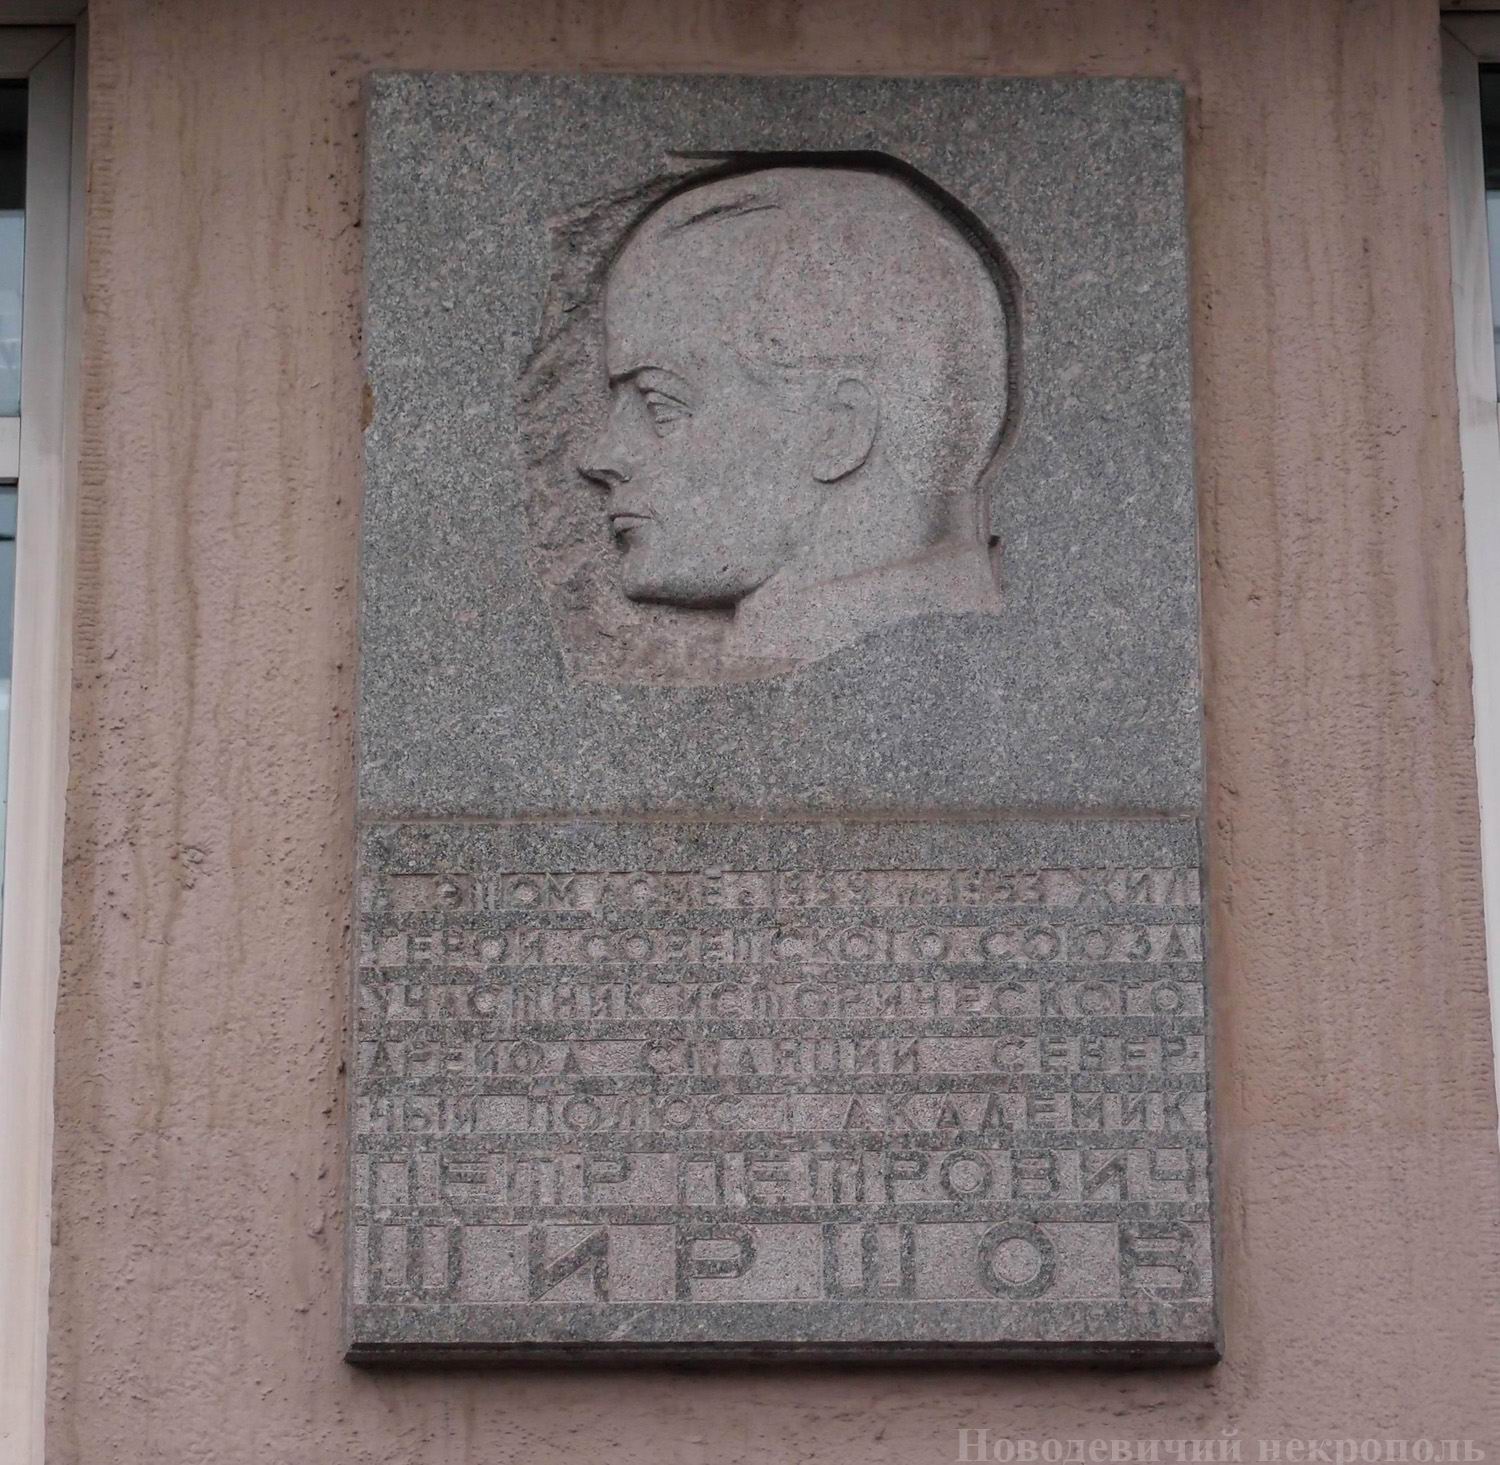 Мемориальная доска Ширшову П.П. (1905–1953), ск. Н.А.Иванов, арх. А.Н.Душкин, на улице Серафимовича, дом 2, открыта 17.8.1973.